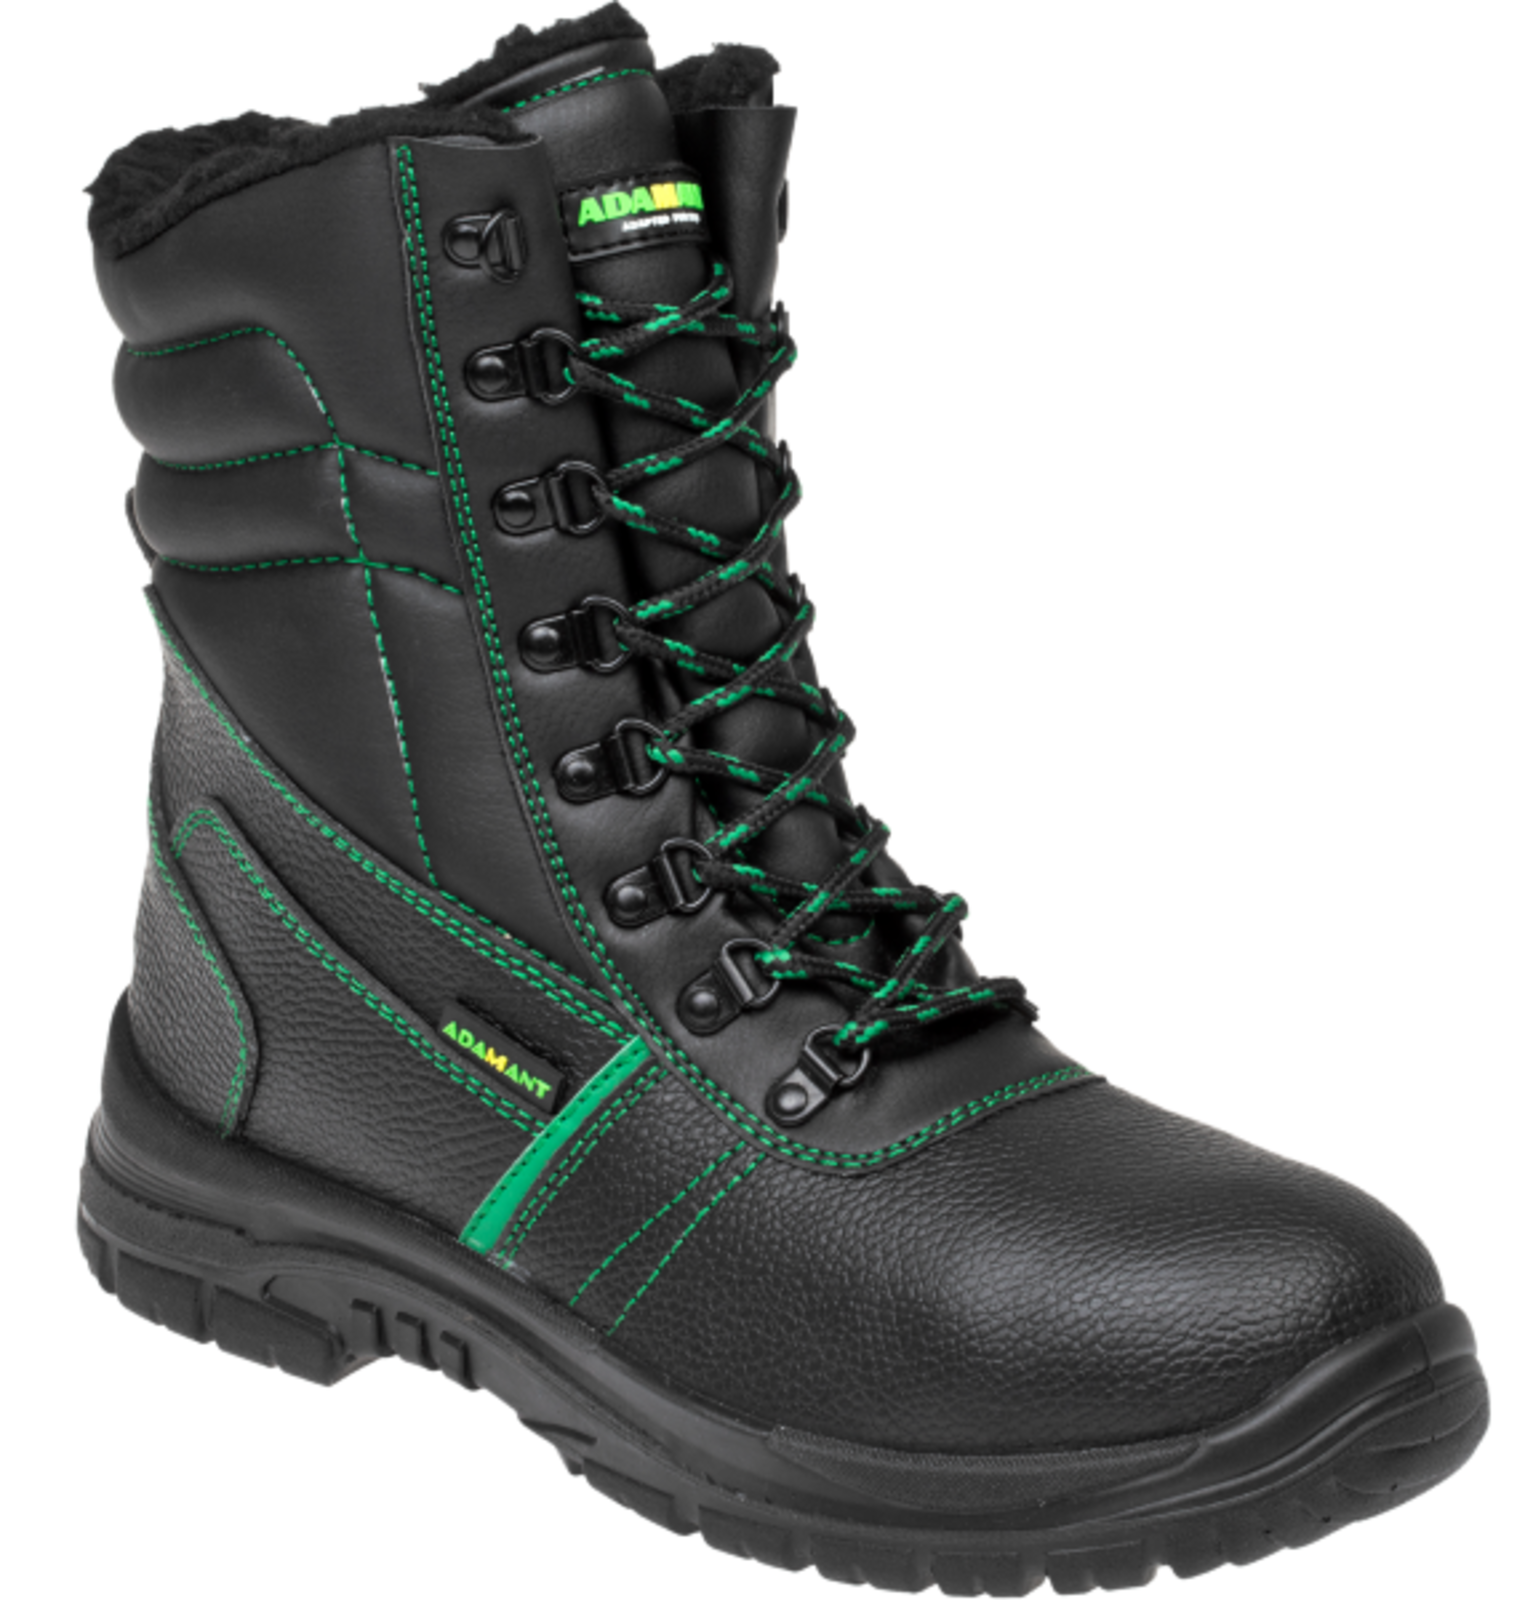 Zimná vysoká bezpečnostná obuv Adamant Classic S3 - veľkosť: 40, farba: čierna